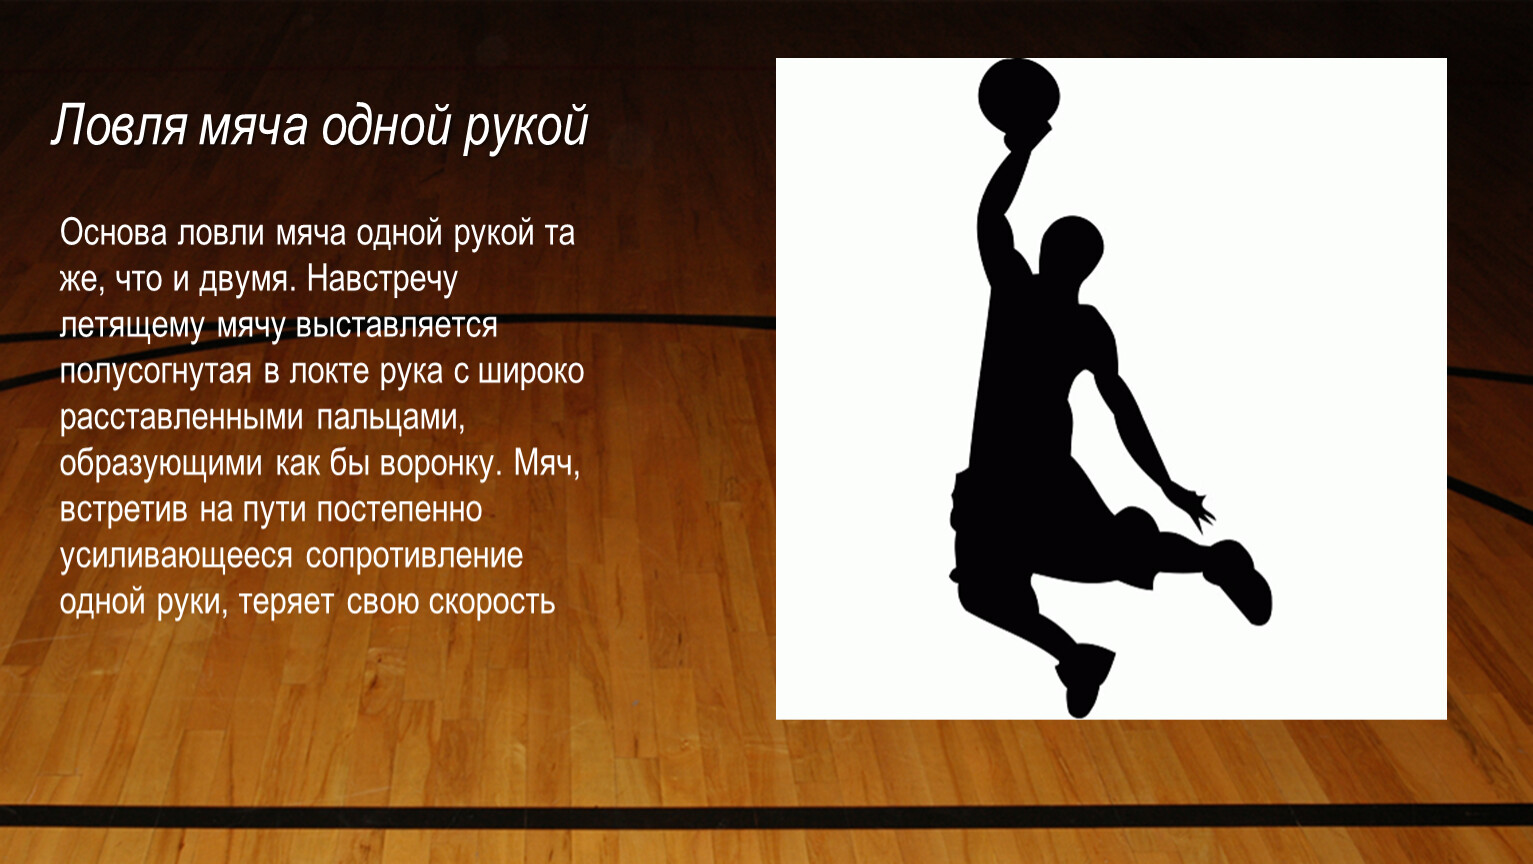 Продвижение игрока с мячом. Ловля мяча в баскетболе. Ловля мяча одной рукой в баскетболе. Баскетбол презентация. Ловля и передача мяча в баскетболе.